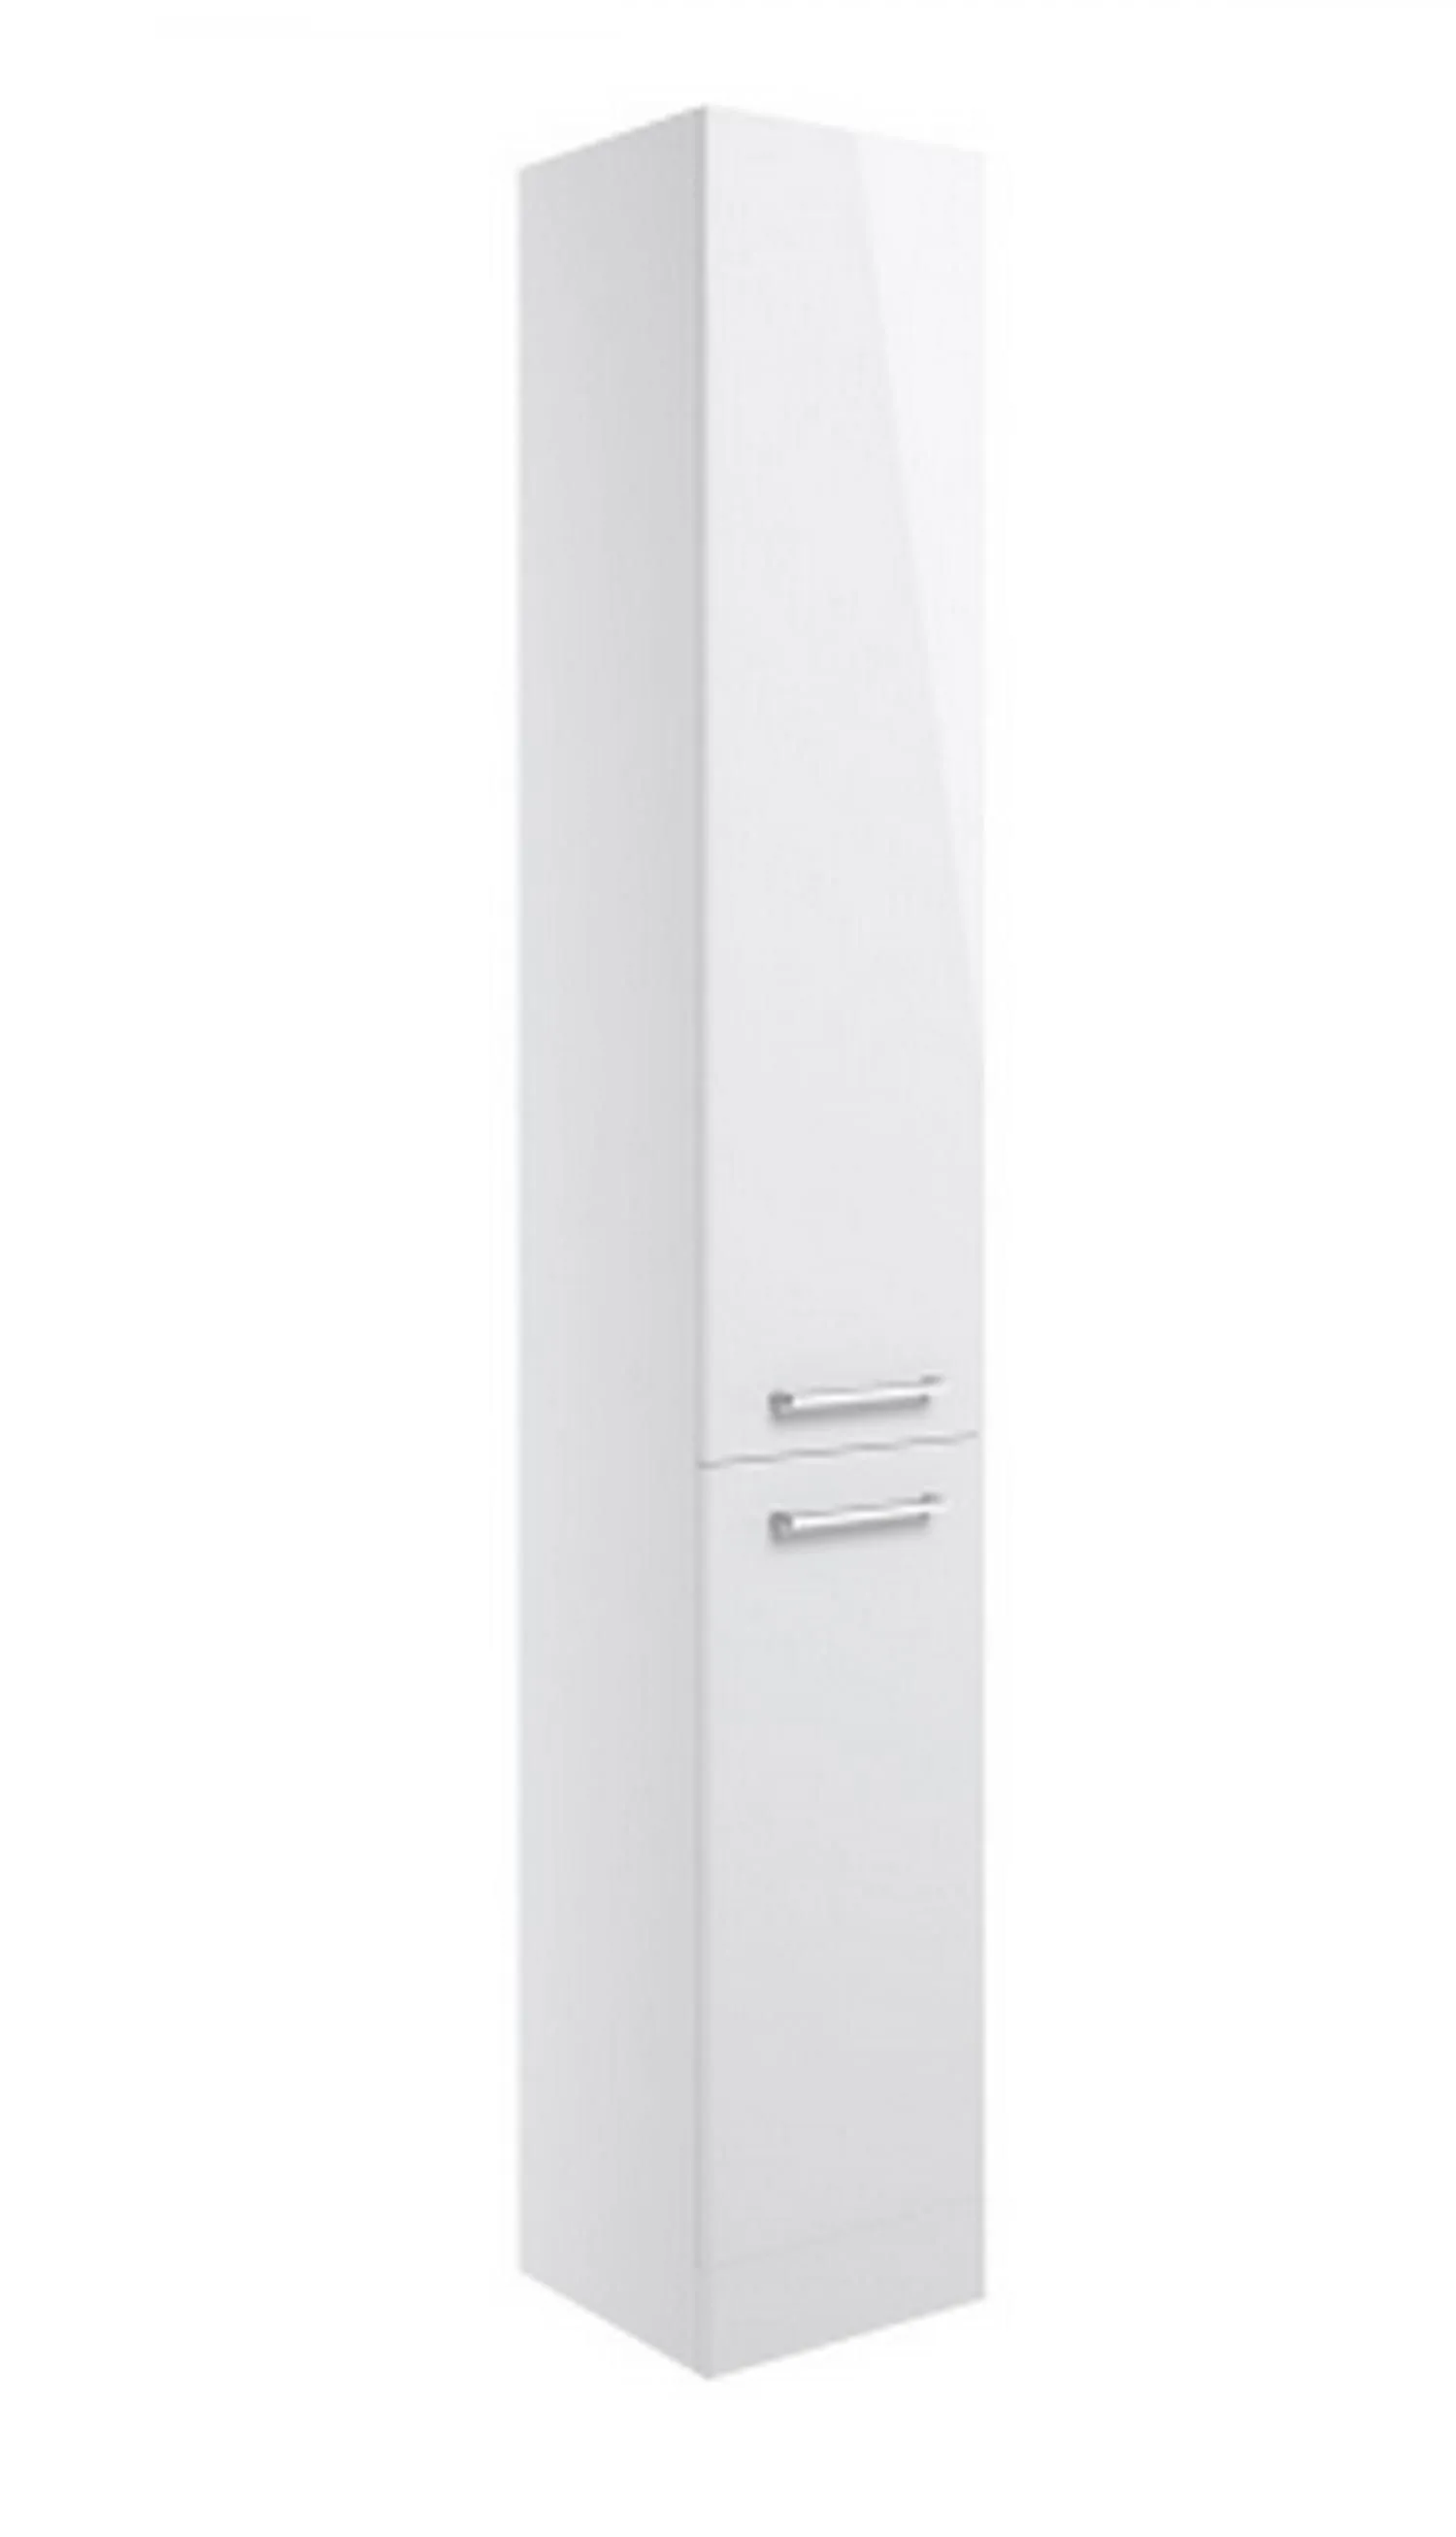 BTL Venosa Floor Standing 2 Door Tall Unit 350mm White Gloss